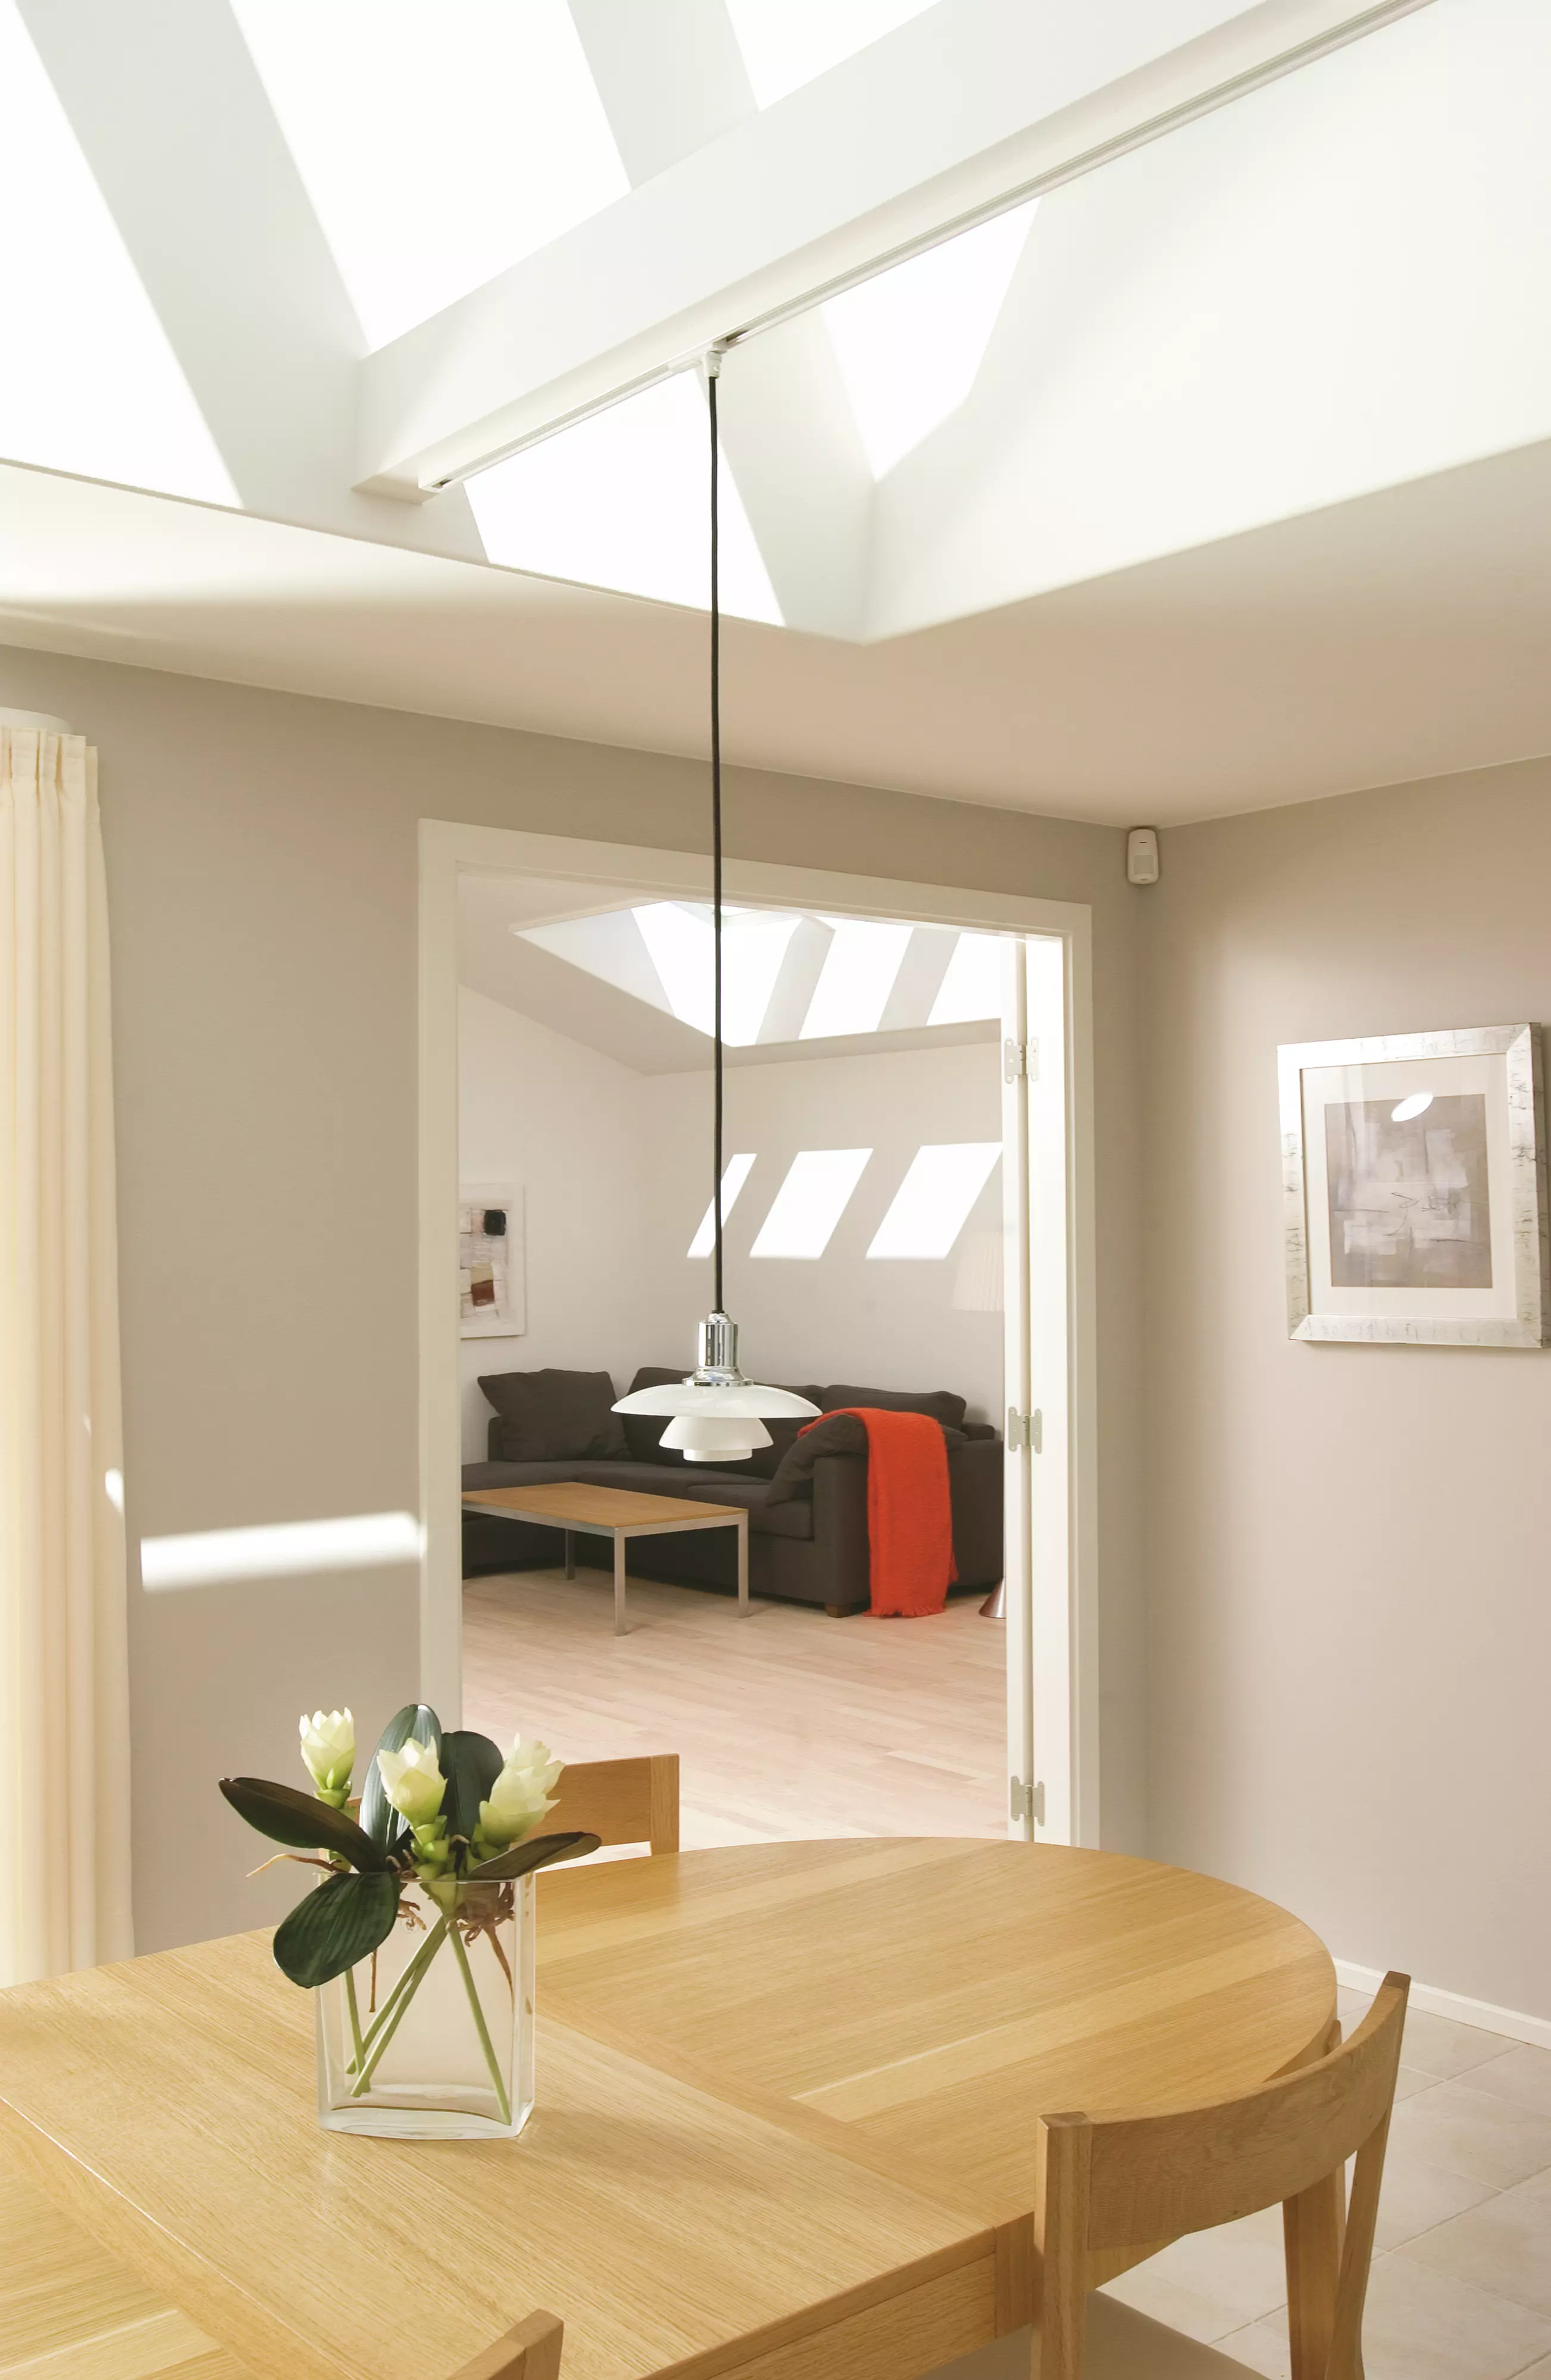 Salon moderne avec lumière naturelle provenant d'une fenêtre de toit VELUX, meubles en bois et accents rouges.